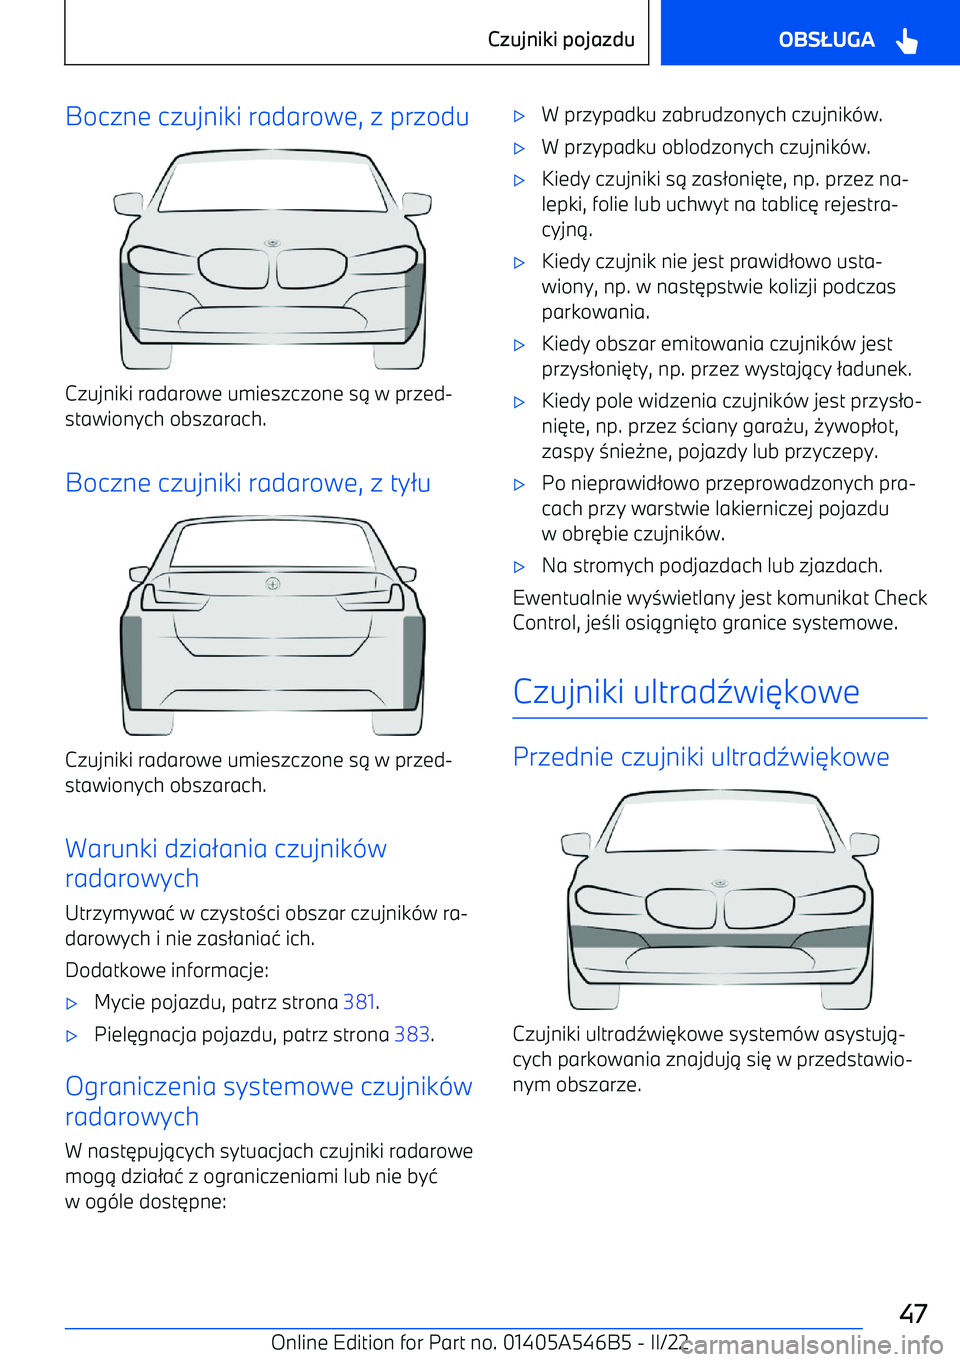 BMW I4 2022  Instrukcja obsługi (in Polish) Boczne czujniki radarowe, z przodu
Czujniki radarowe umieszczone s